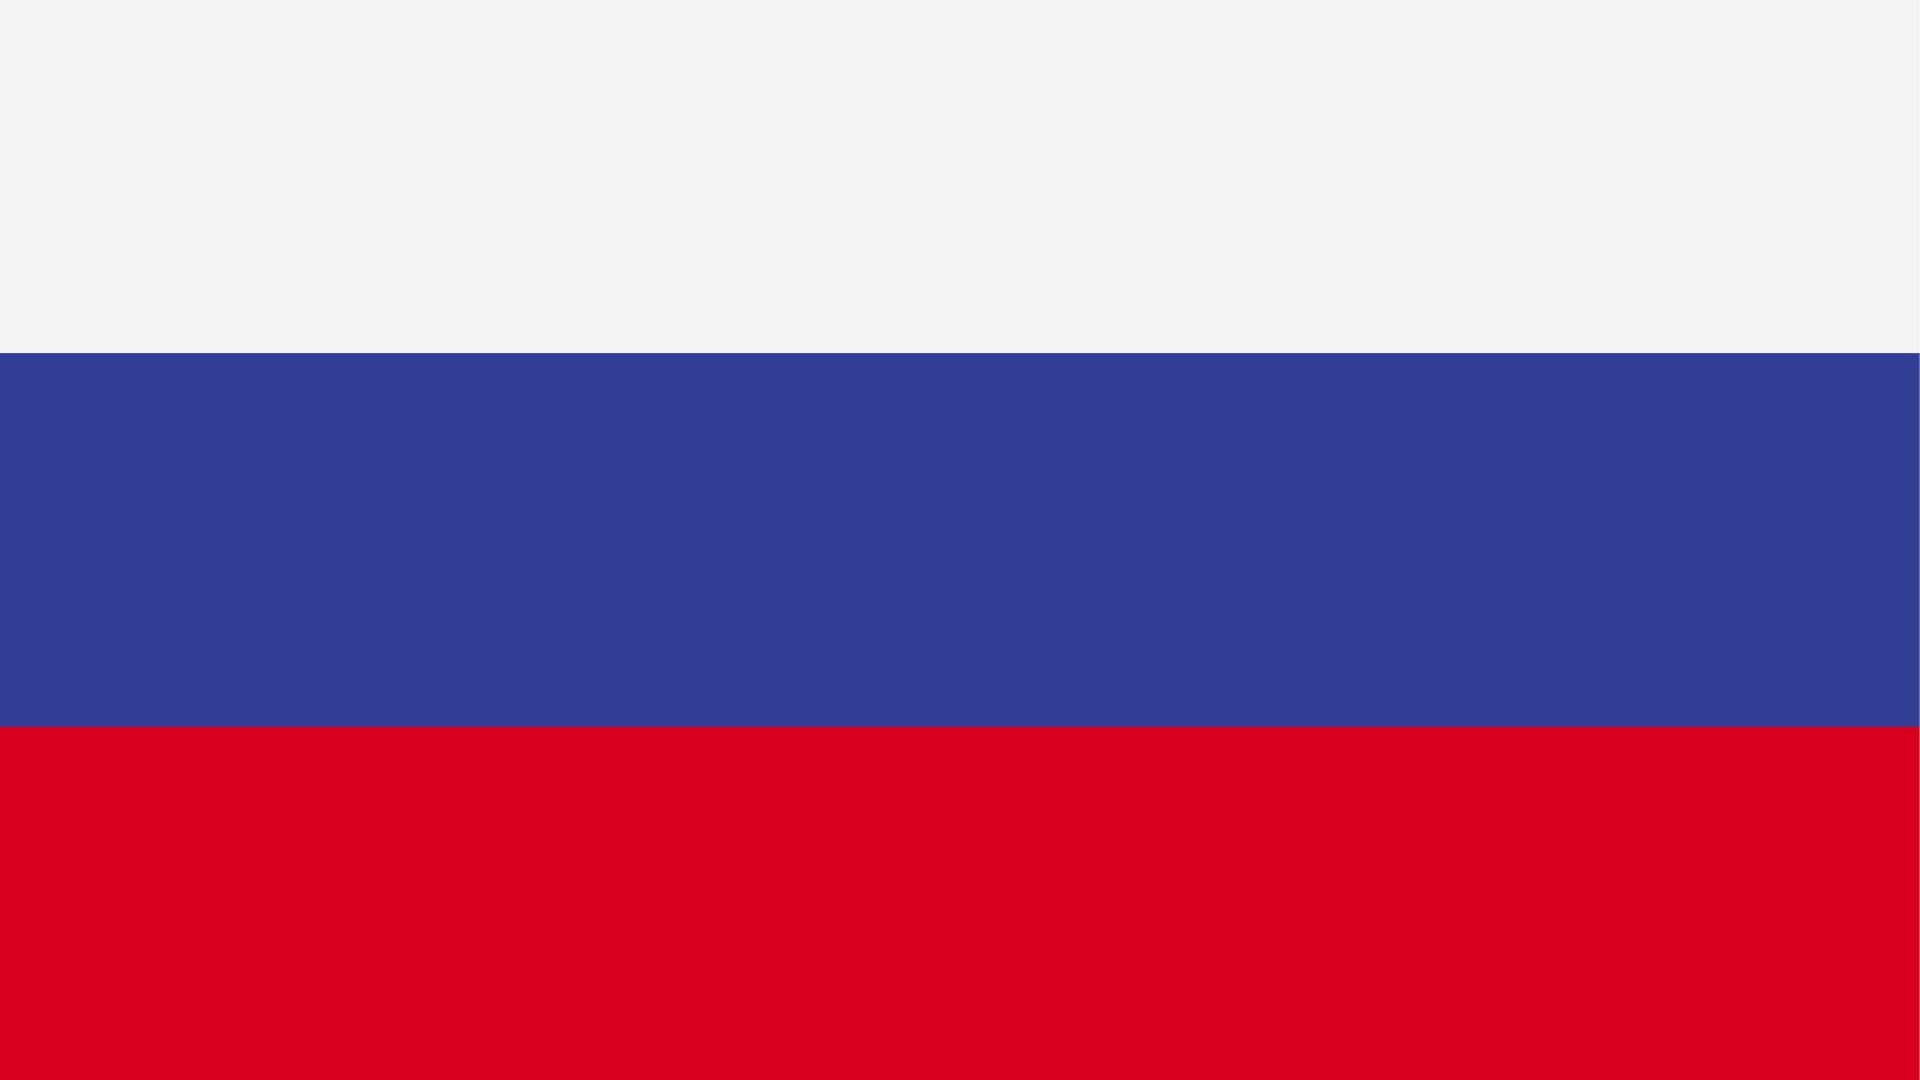 A bandeira da Rússia possui três cores: branco, azul e vermelho.